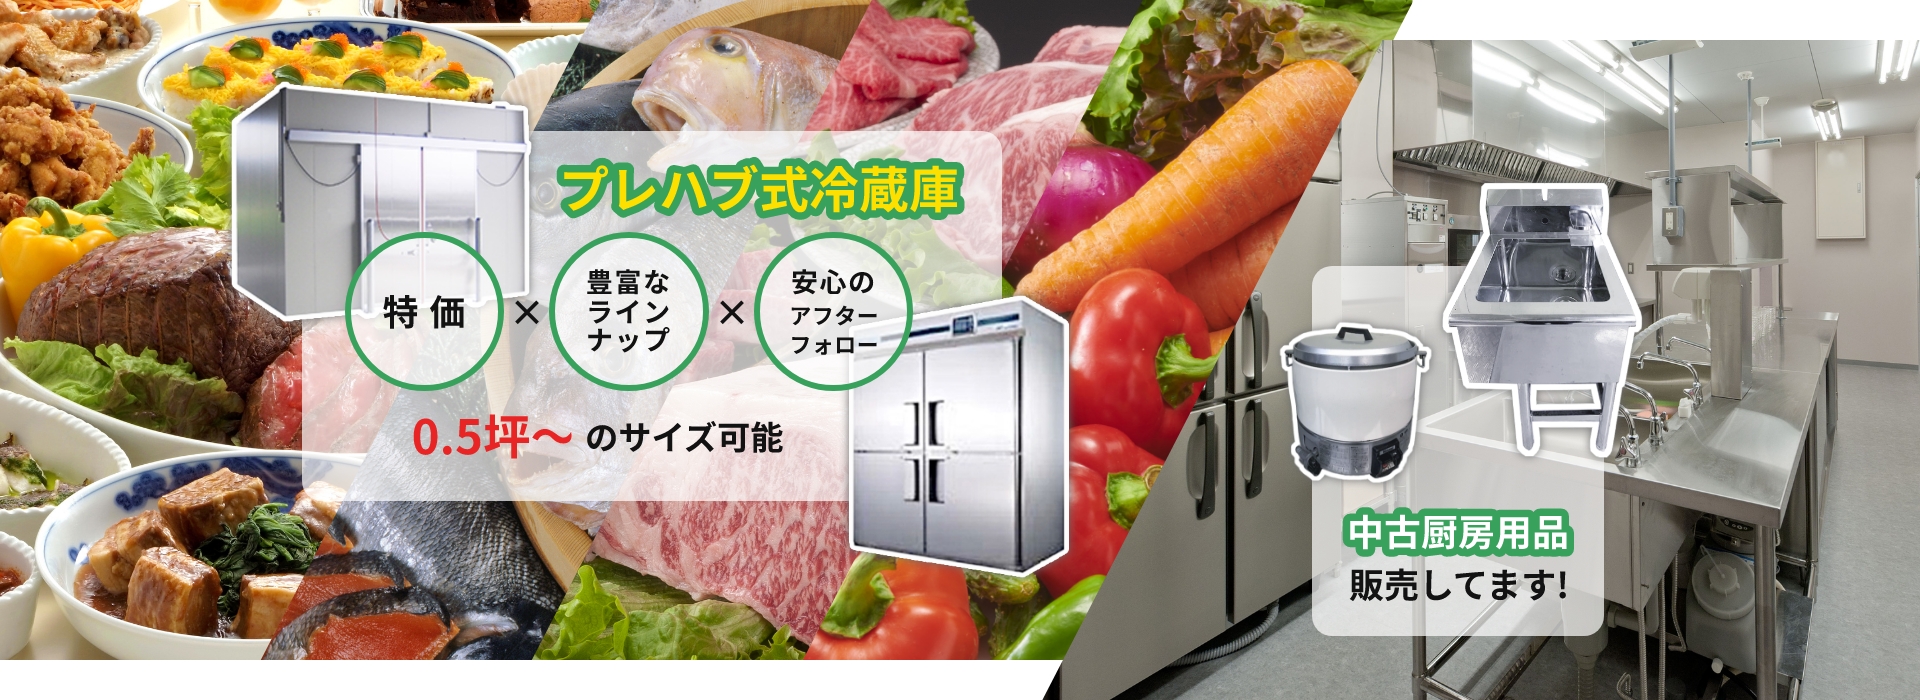 プレハブ式冷蔵庫特価 豊富なラインナップ 安心のアフターフォロー 0.5坪〜無限大のサイズ可能 中古厨房用品販売しています!